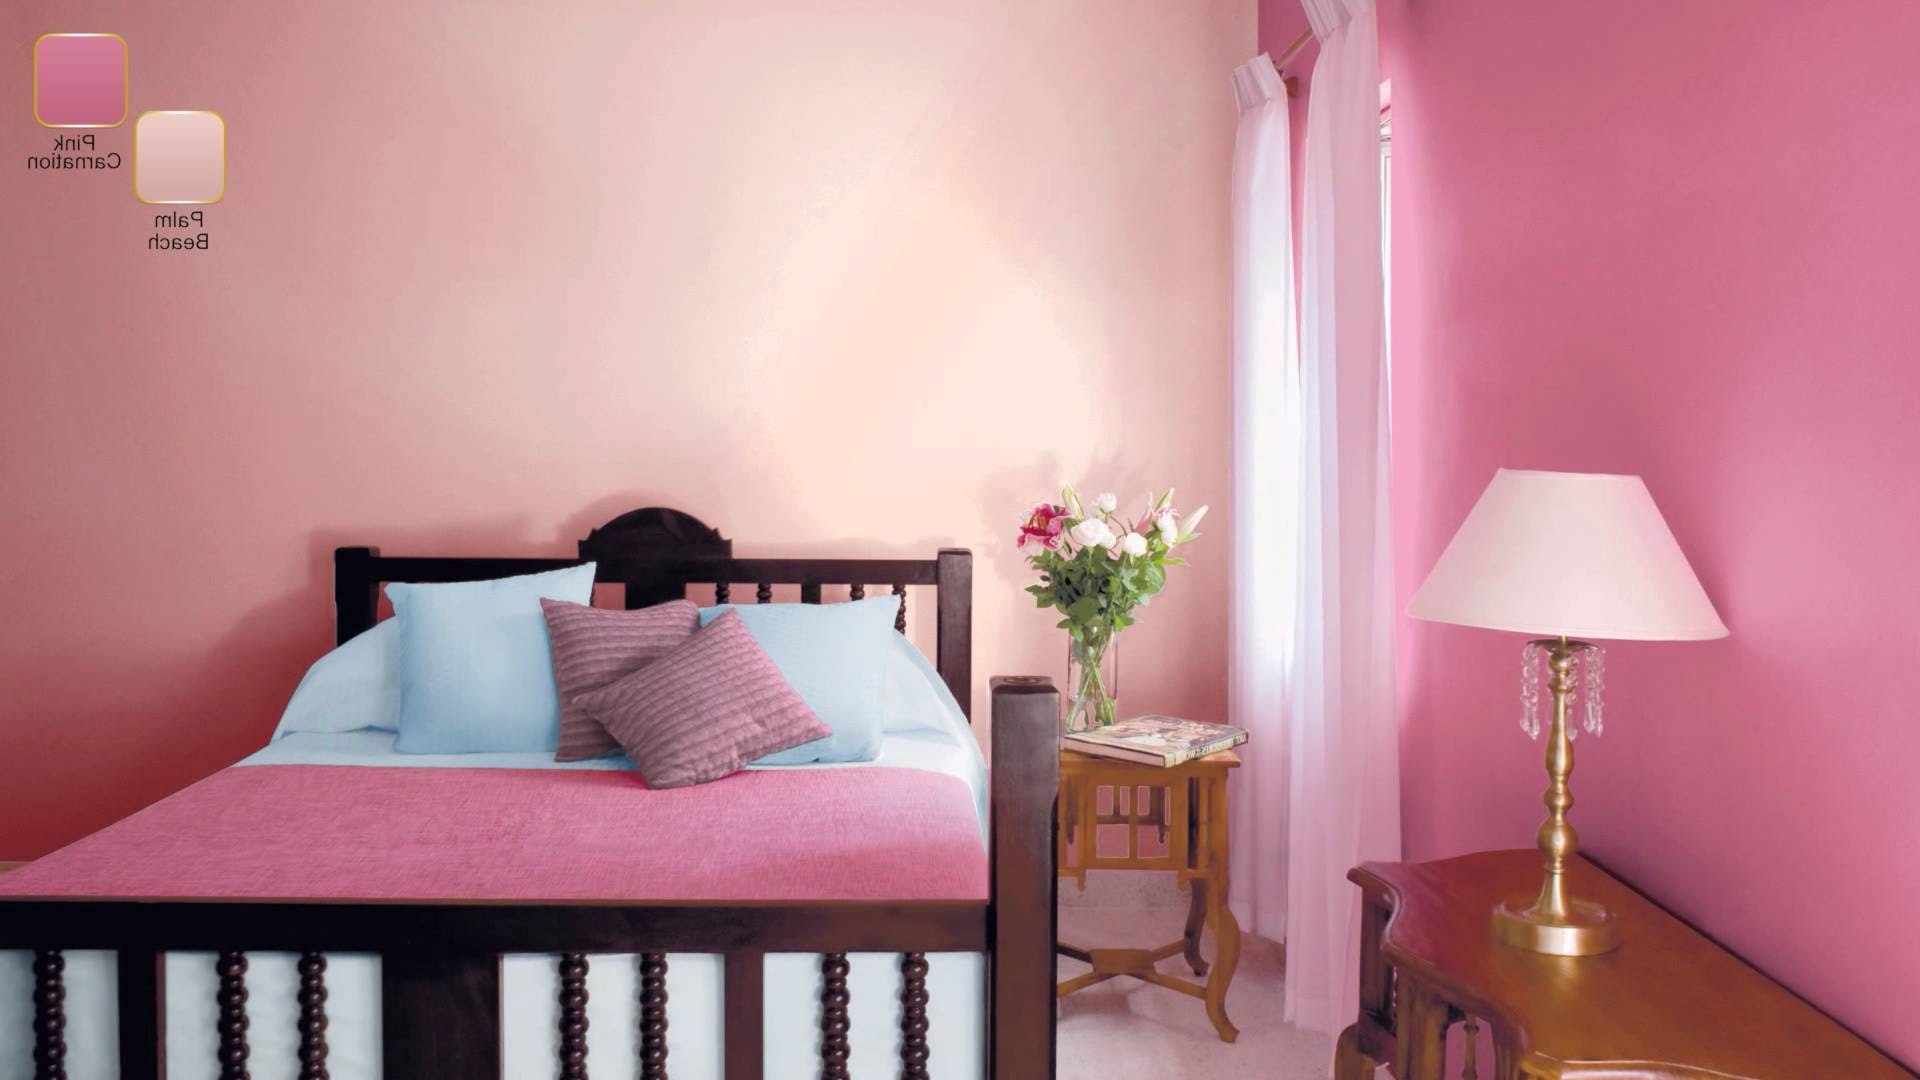 Home Architec Ideas Bedroom Asian Paints Home Colour Design Inside